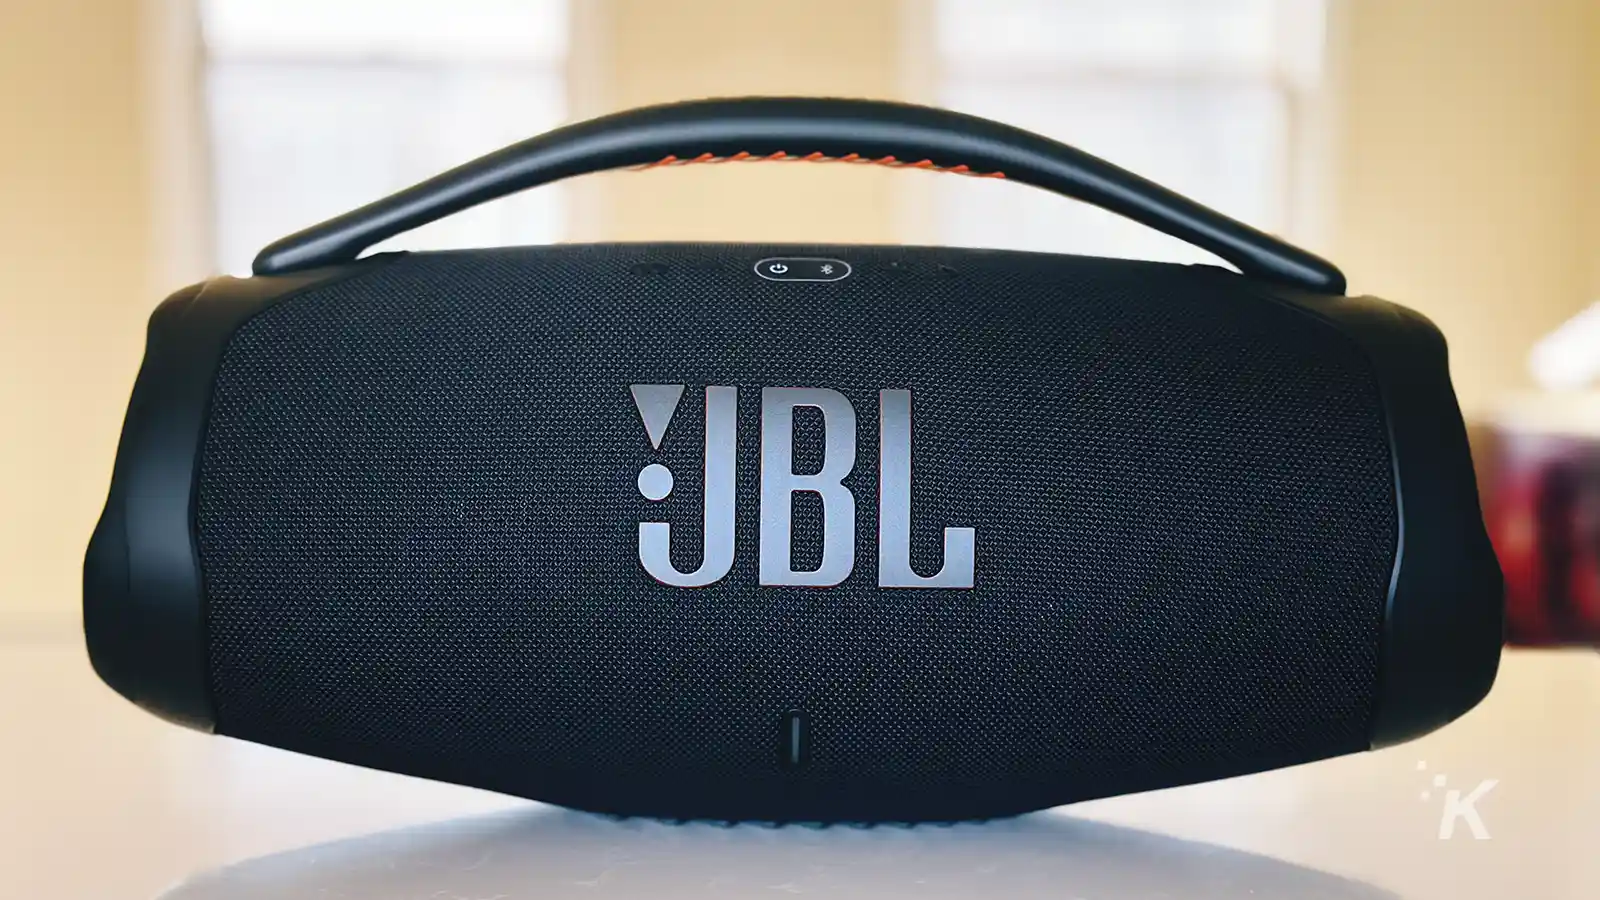 Przenośny głośnik JBL Boombox 3 czarny na stole